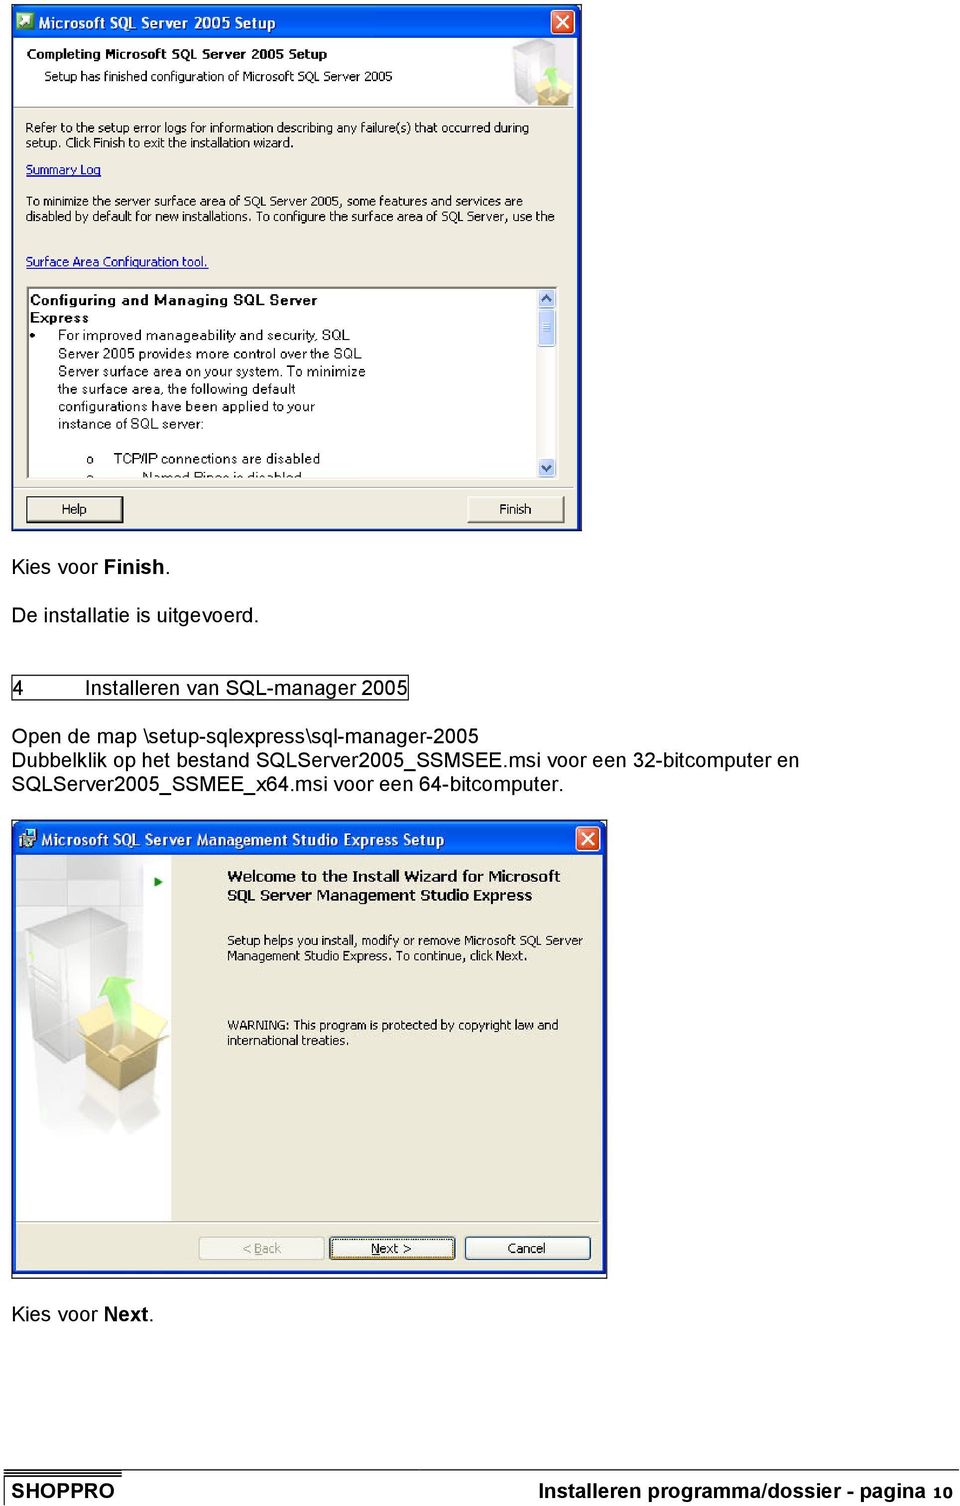 Dubbelklik op het bestand SQLServer2005_SSMSEE.